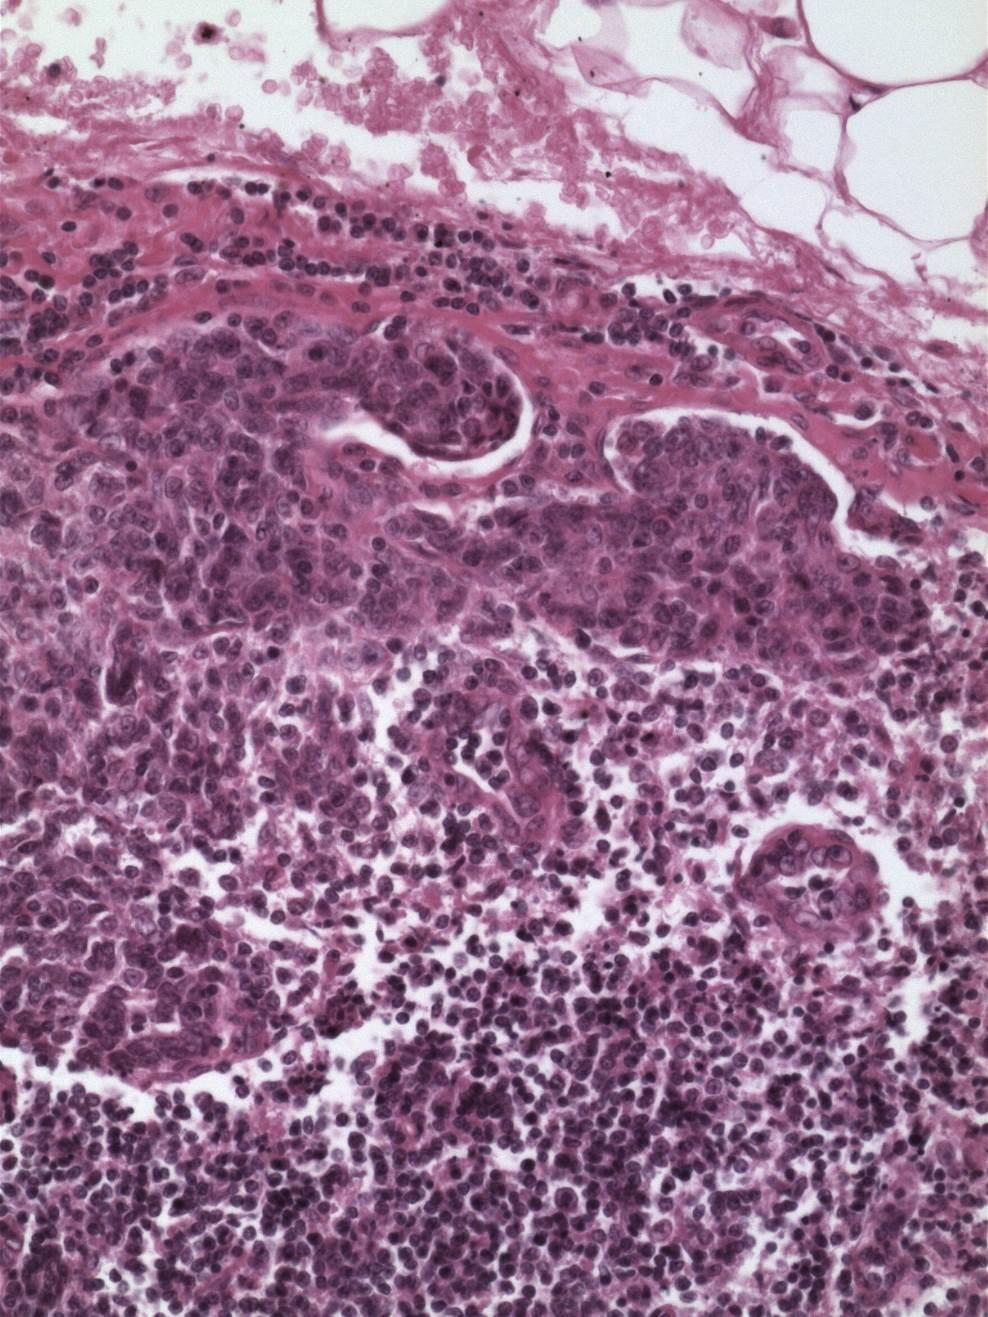 pt1b1, N1; micrometastasis in one